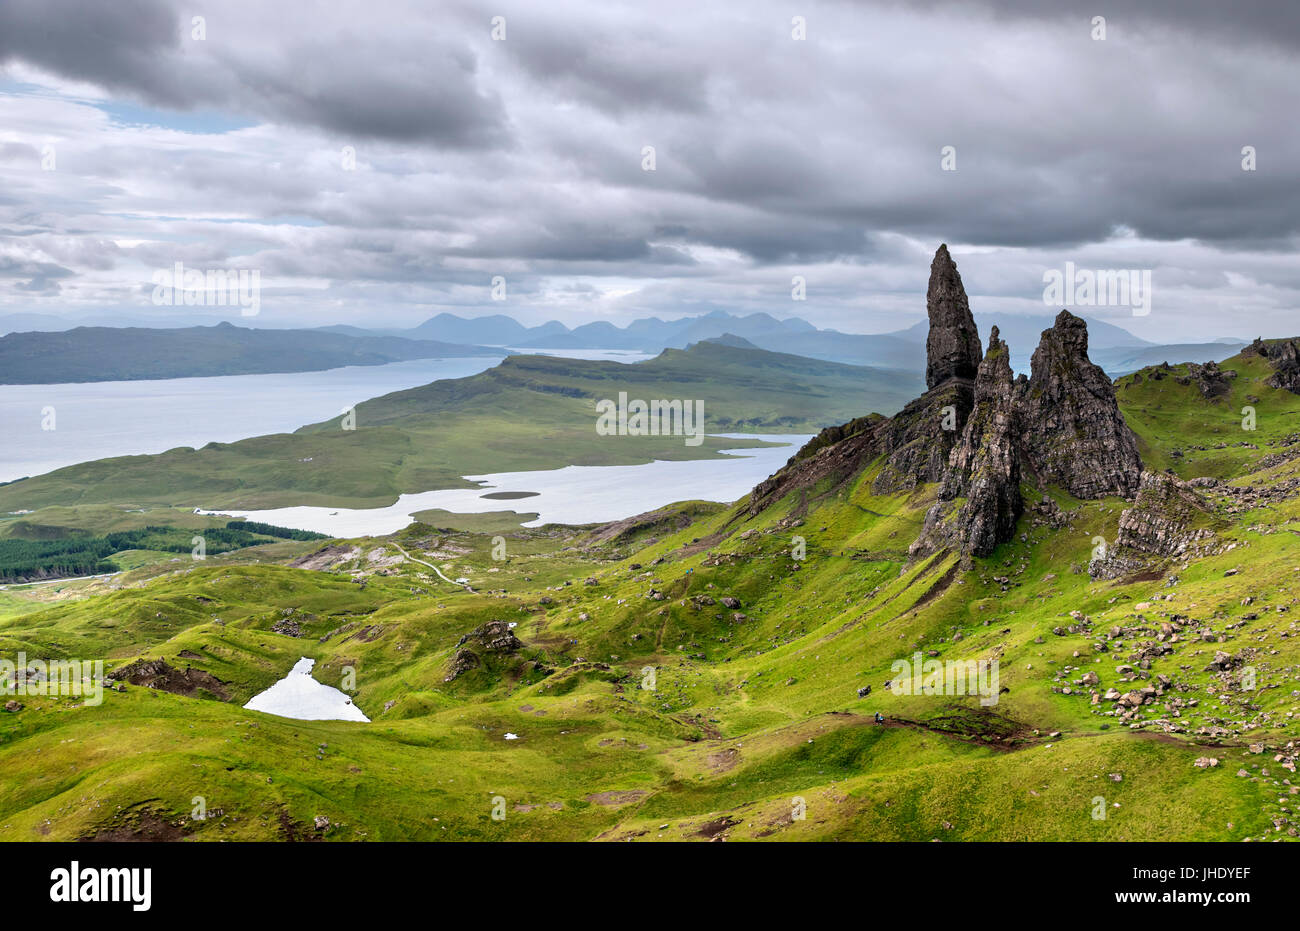 Le vieil homme de Storr, île de Skye, Highland, Scotland, UK. Paysage écossais / paysages. Banque D'Images